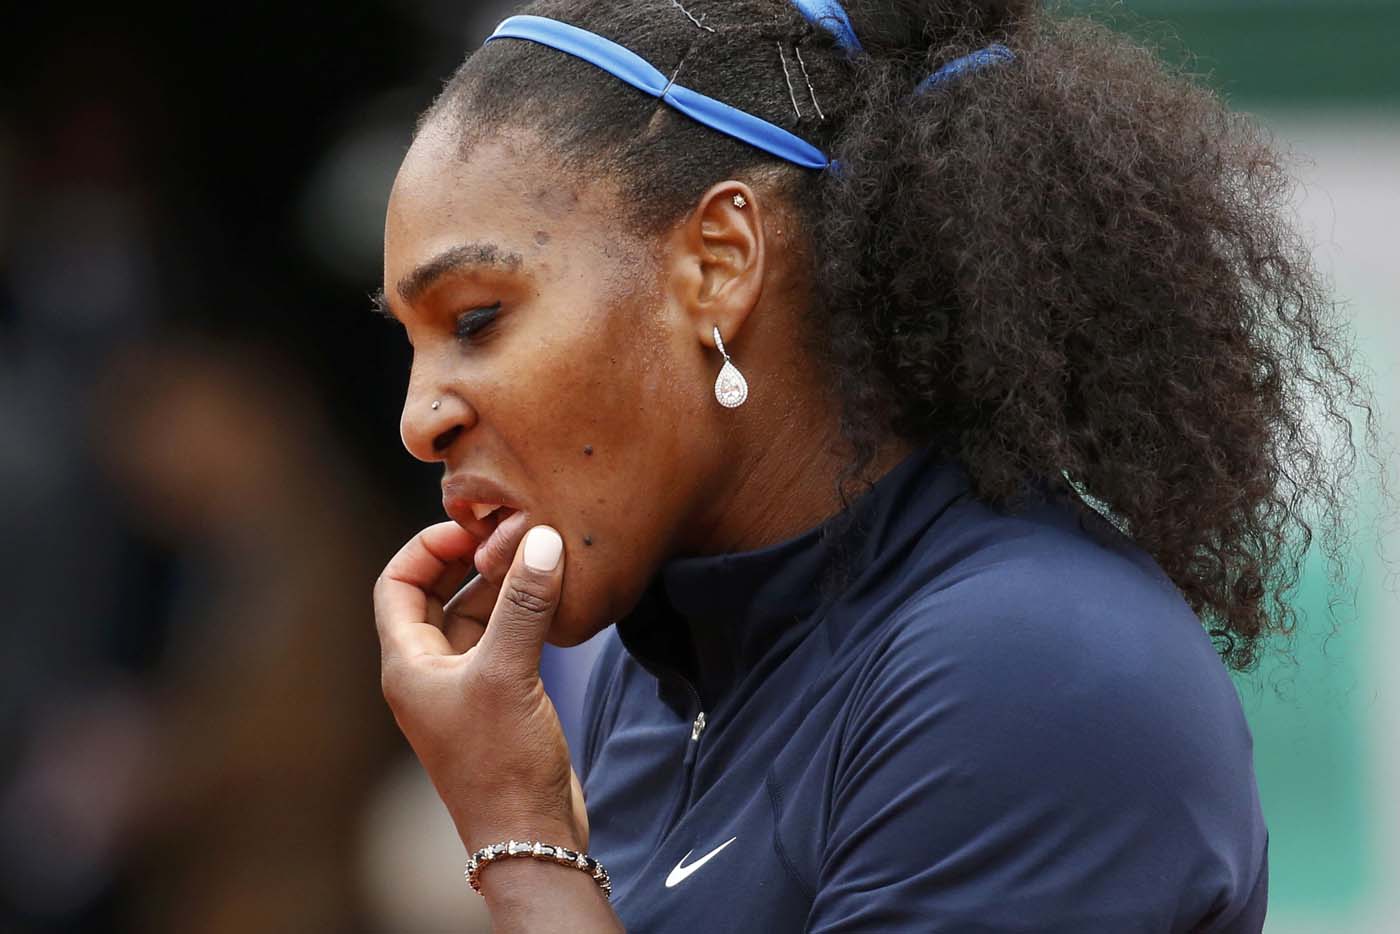 ¡OMG!… La FOTO de Serena Williams que calentó las redes